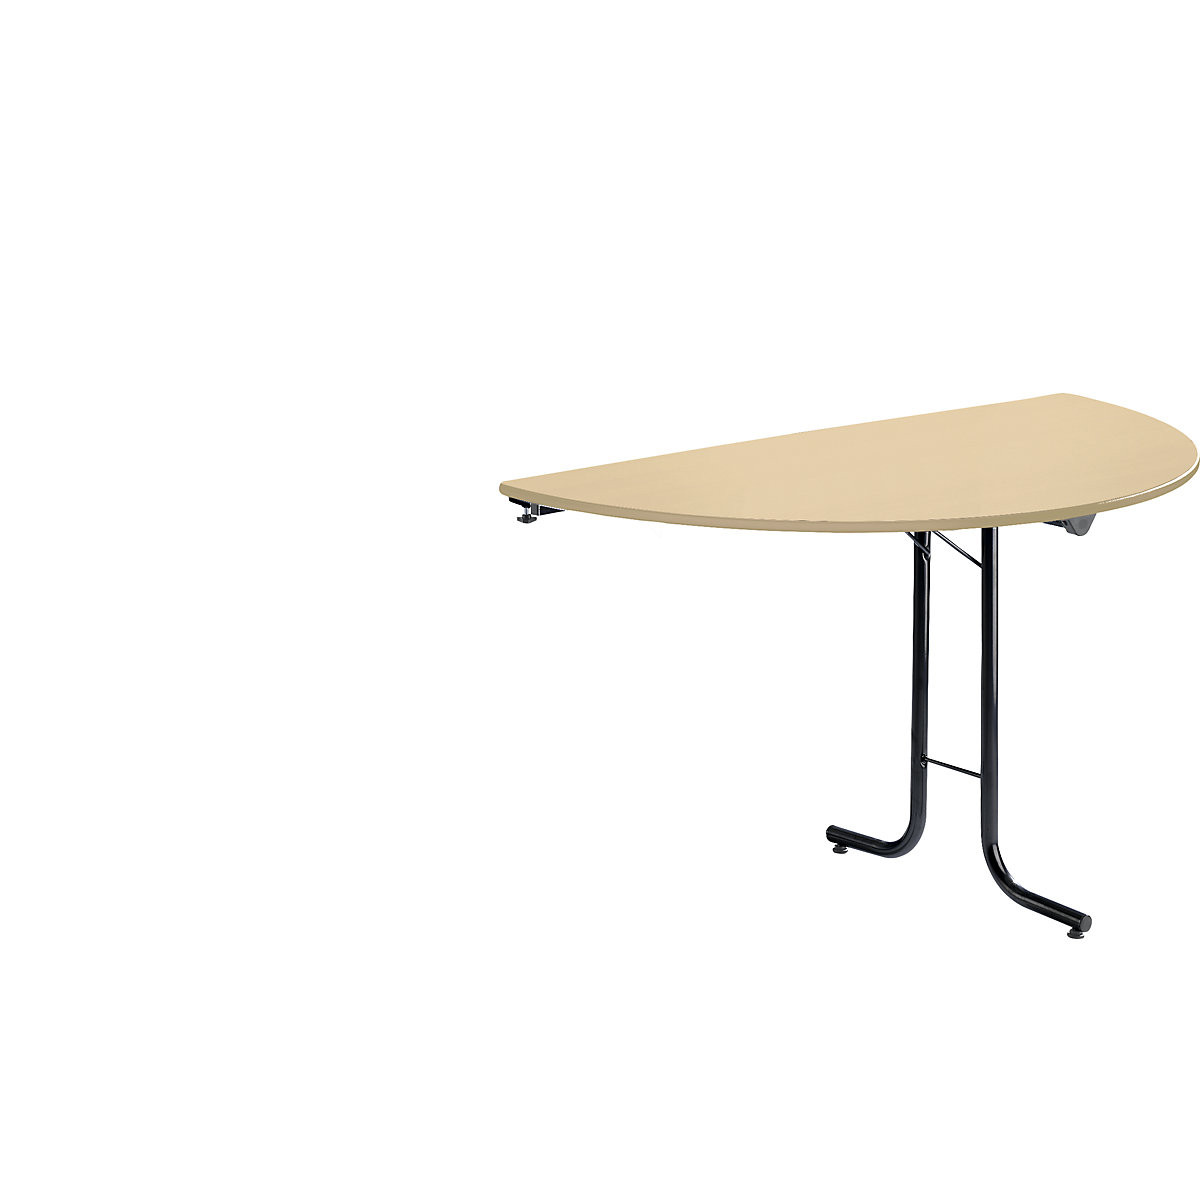 Přístavný stůl ke sklopnému stolu, půlkruhový tvar desky, 1400 x 700 mm, podstavec černý, deska javorový dekor-3